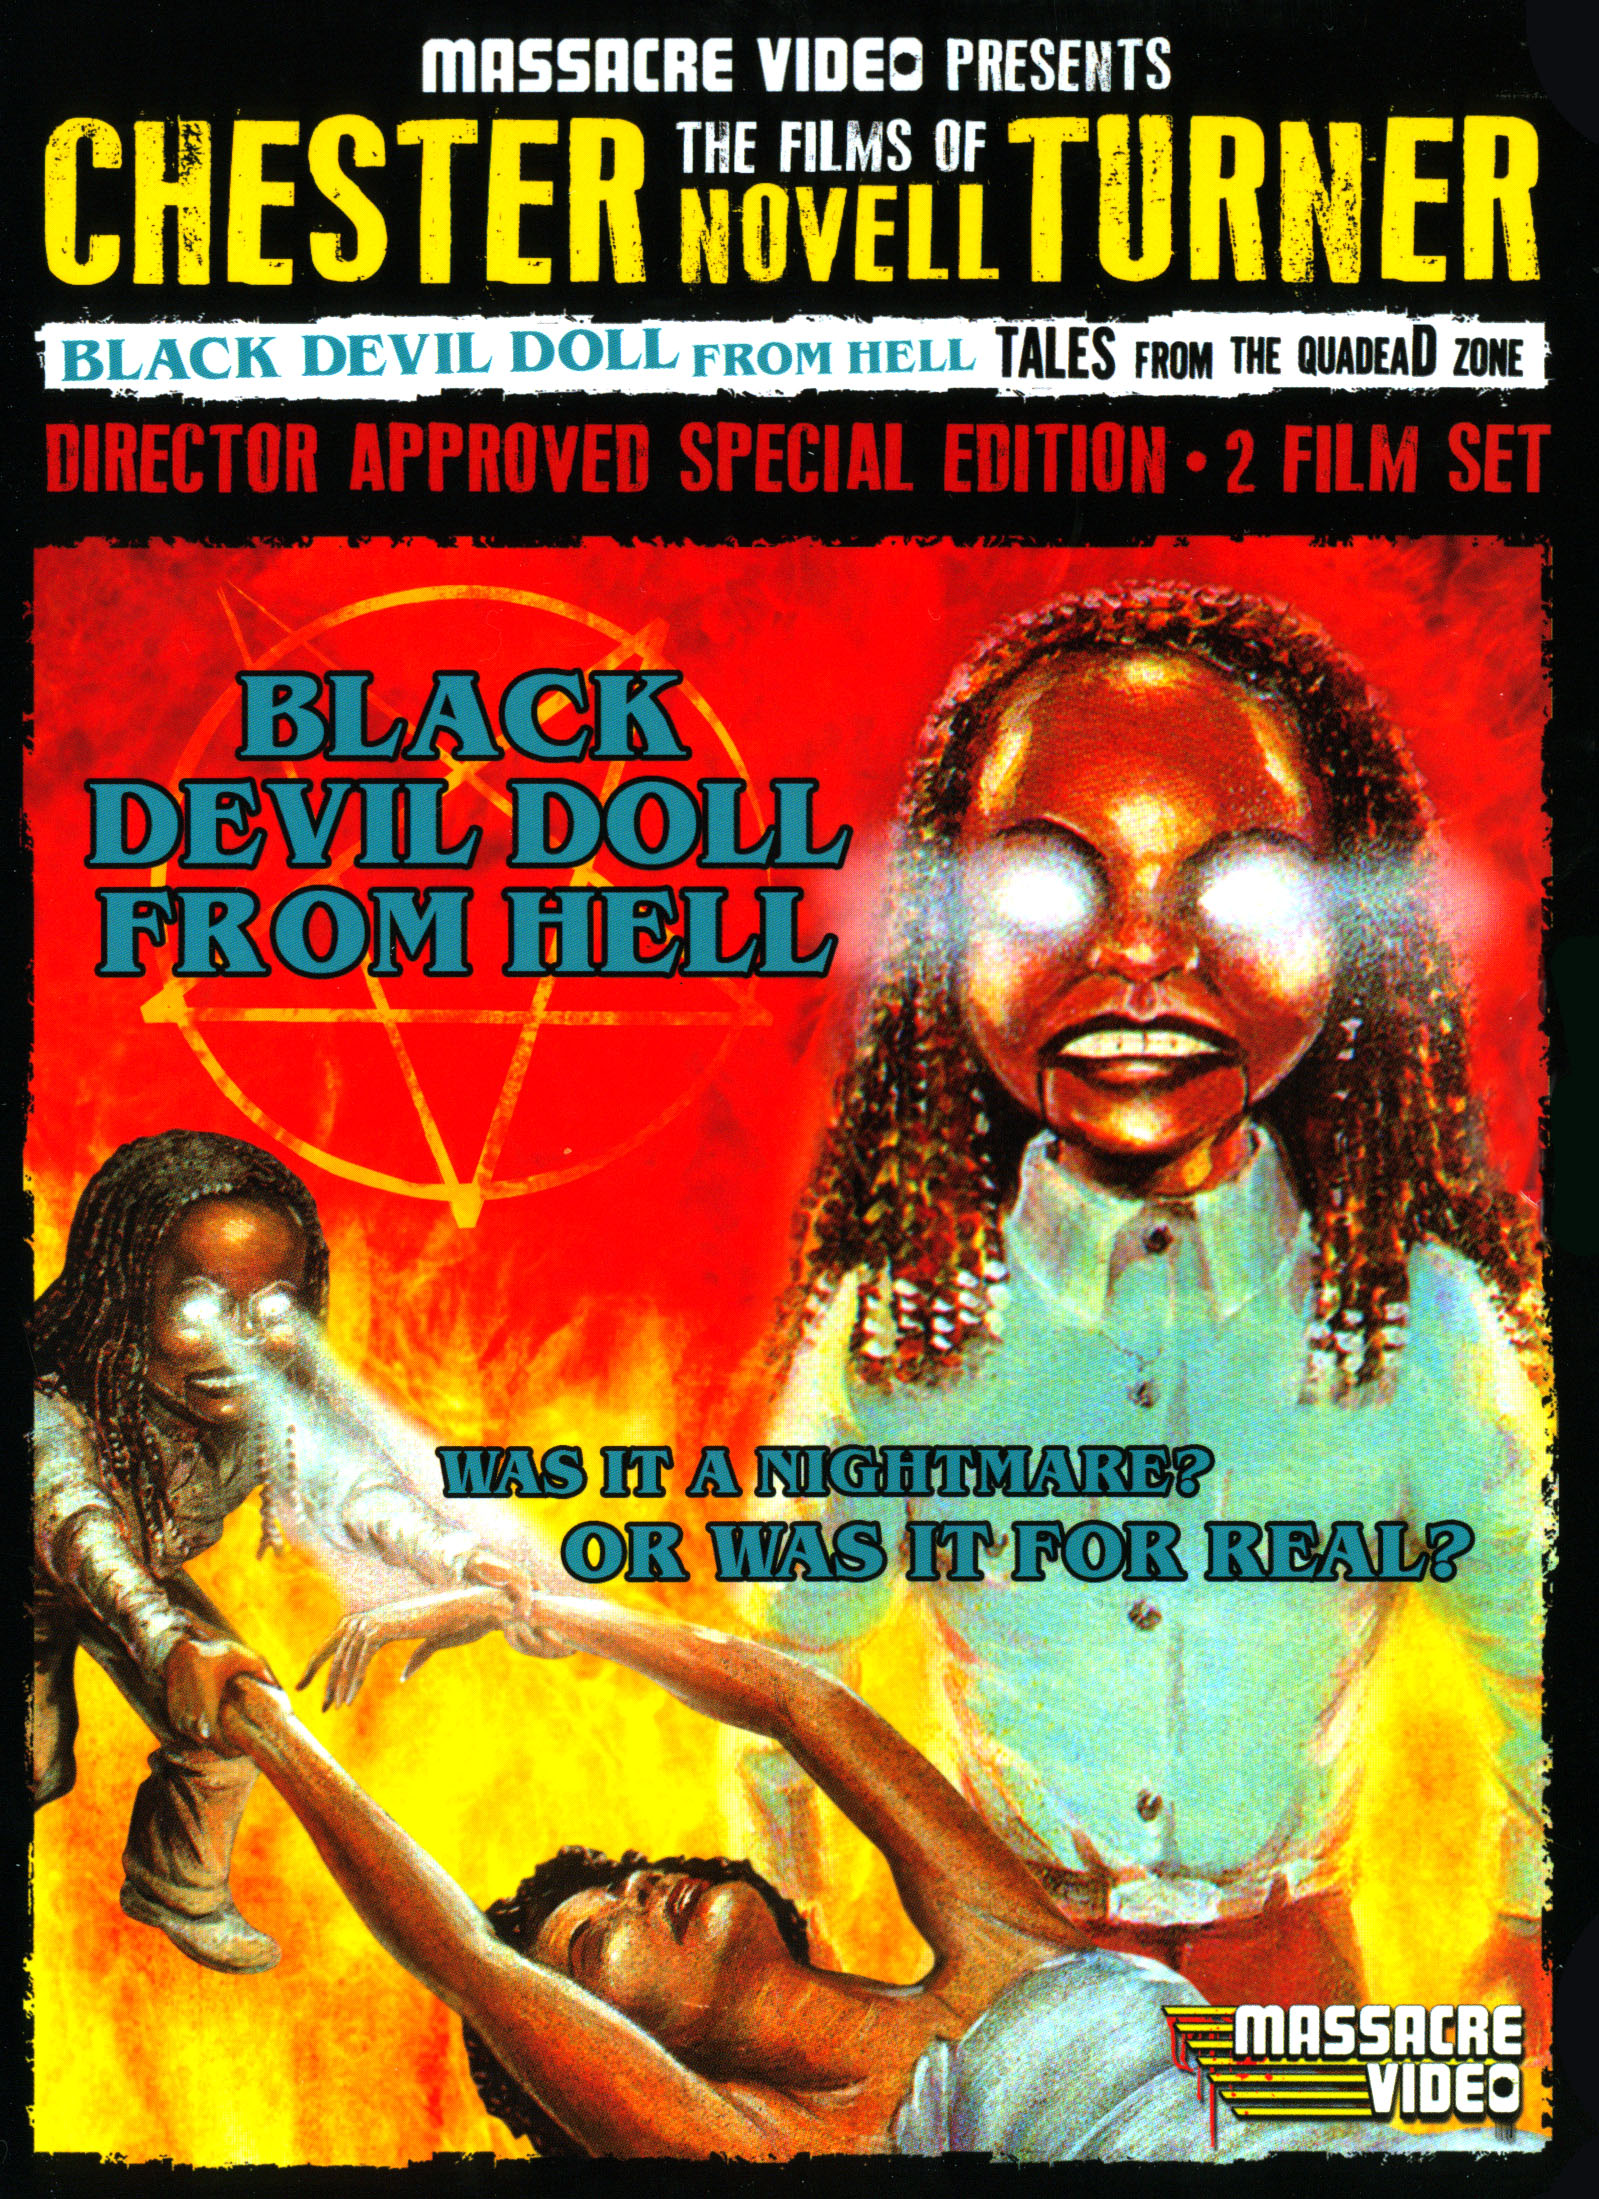 Best Buy: The Films of Chester Novell Turner: Black Devil Doll 